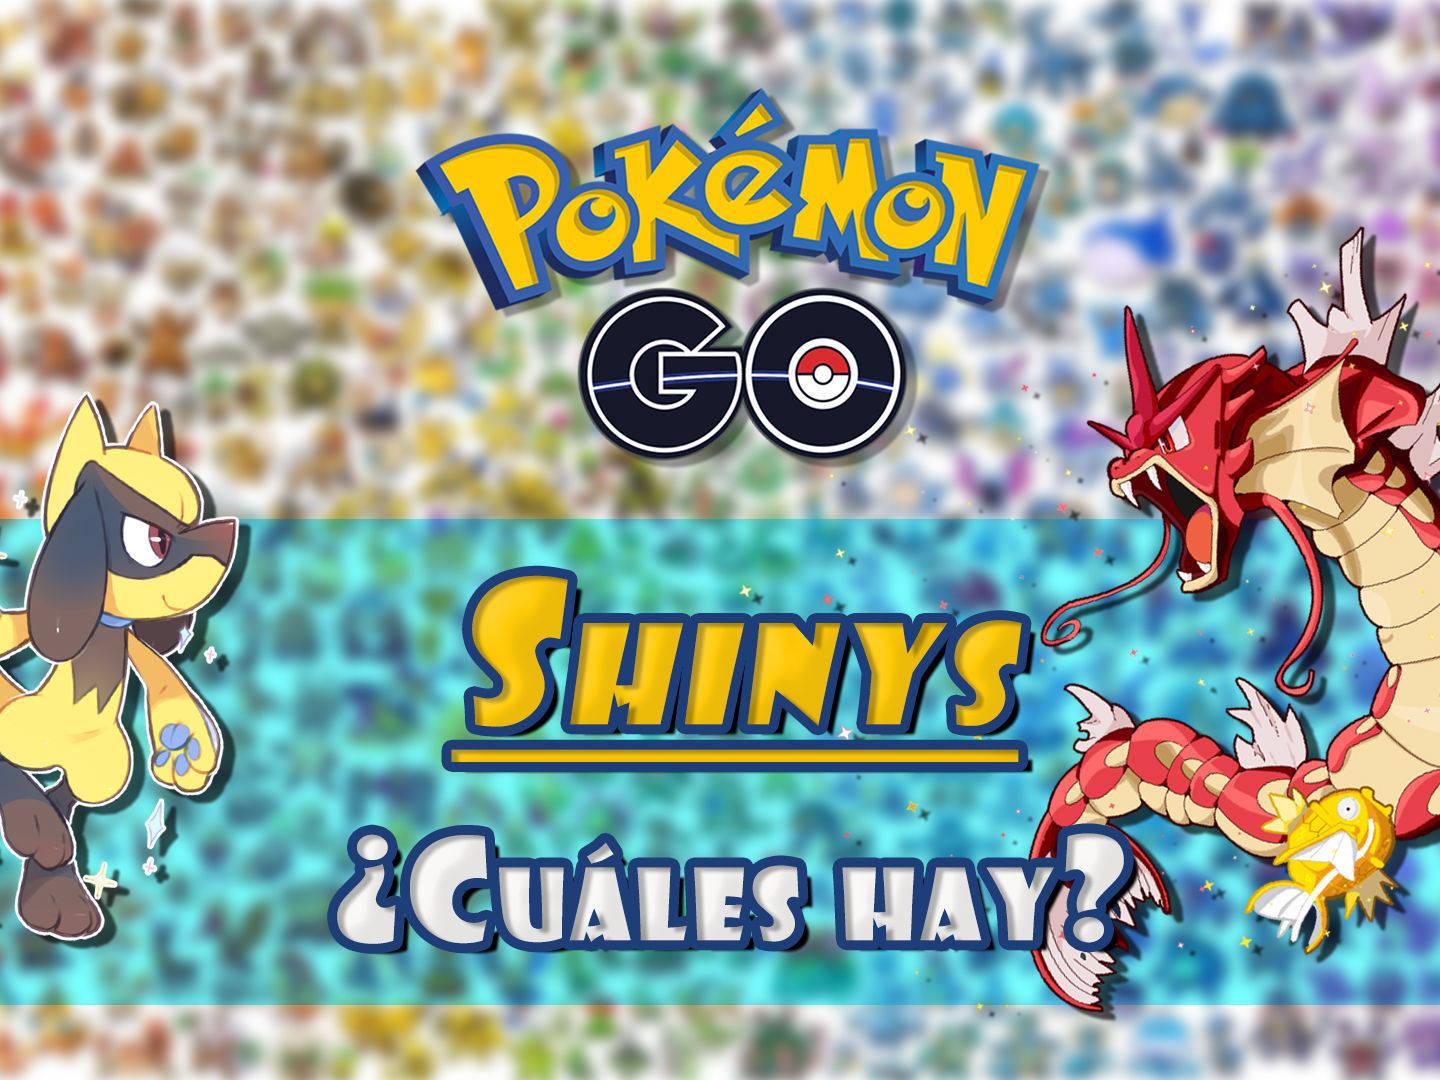 Ho-oh Shiny no Pokémon Go! Como pegar pokémon lendário shiny no